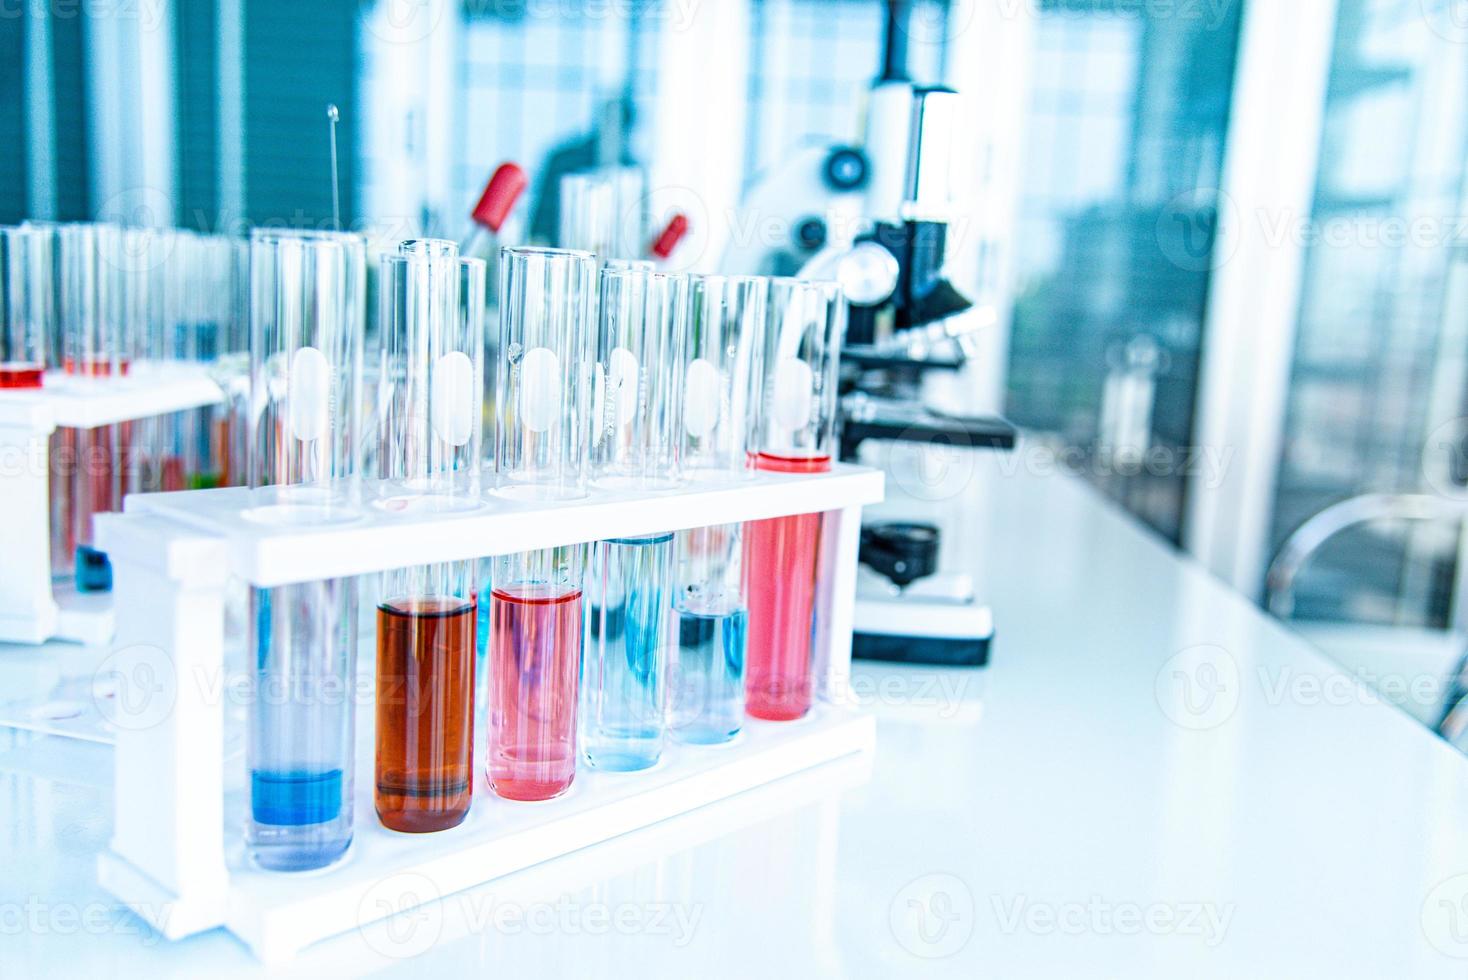 preparación de equipos de laboratorio como cristalería, tubo con azul y líquido sobre la mesa blanca. el experimento químico en la investigación científica foto